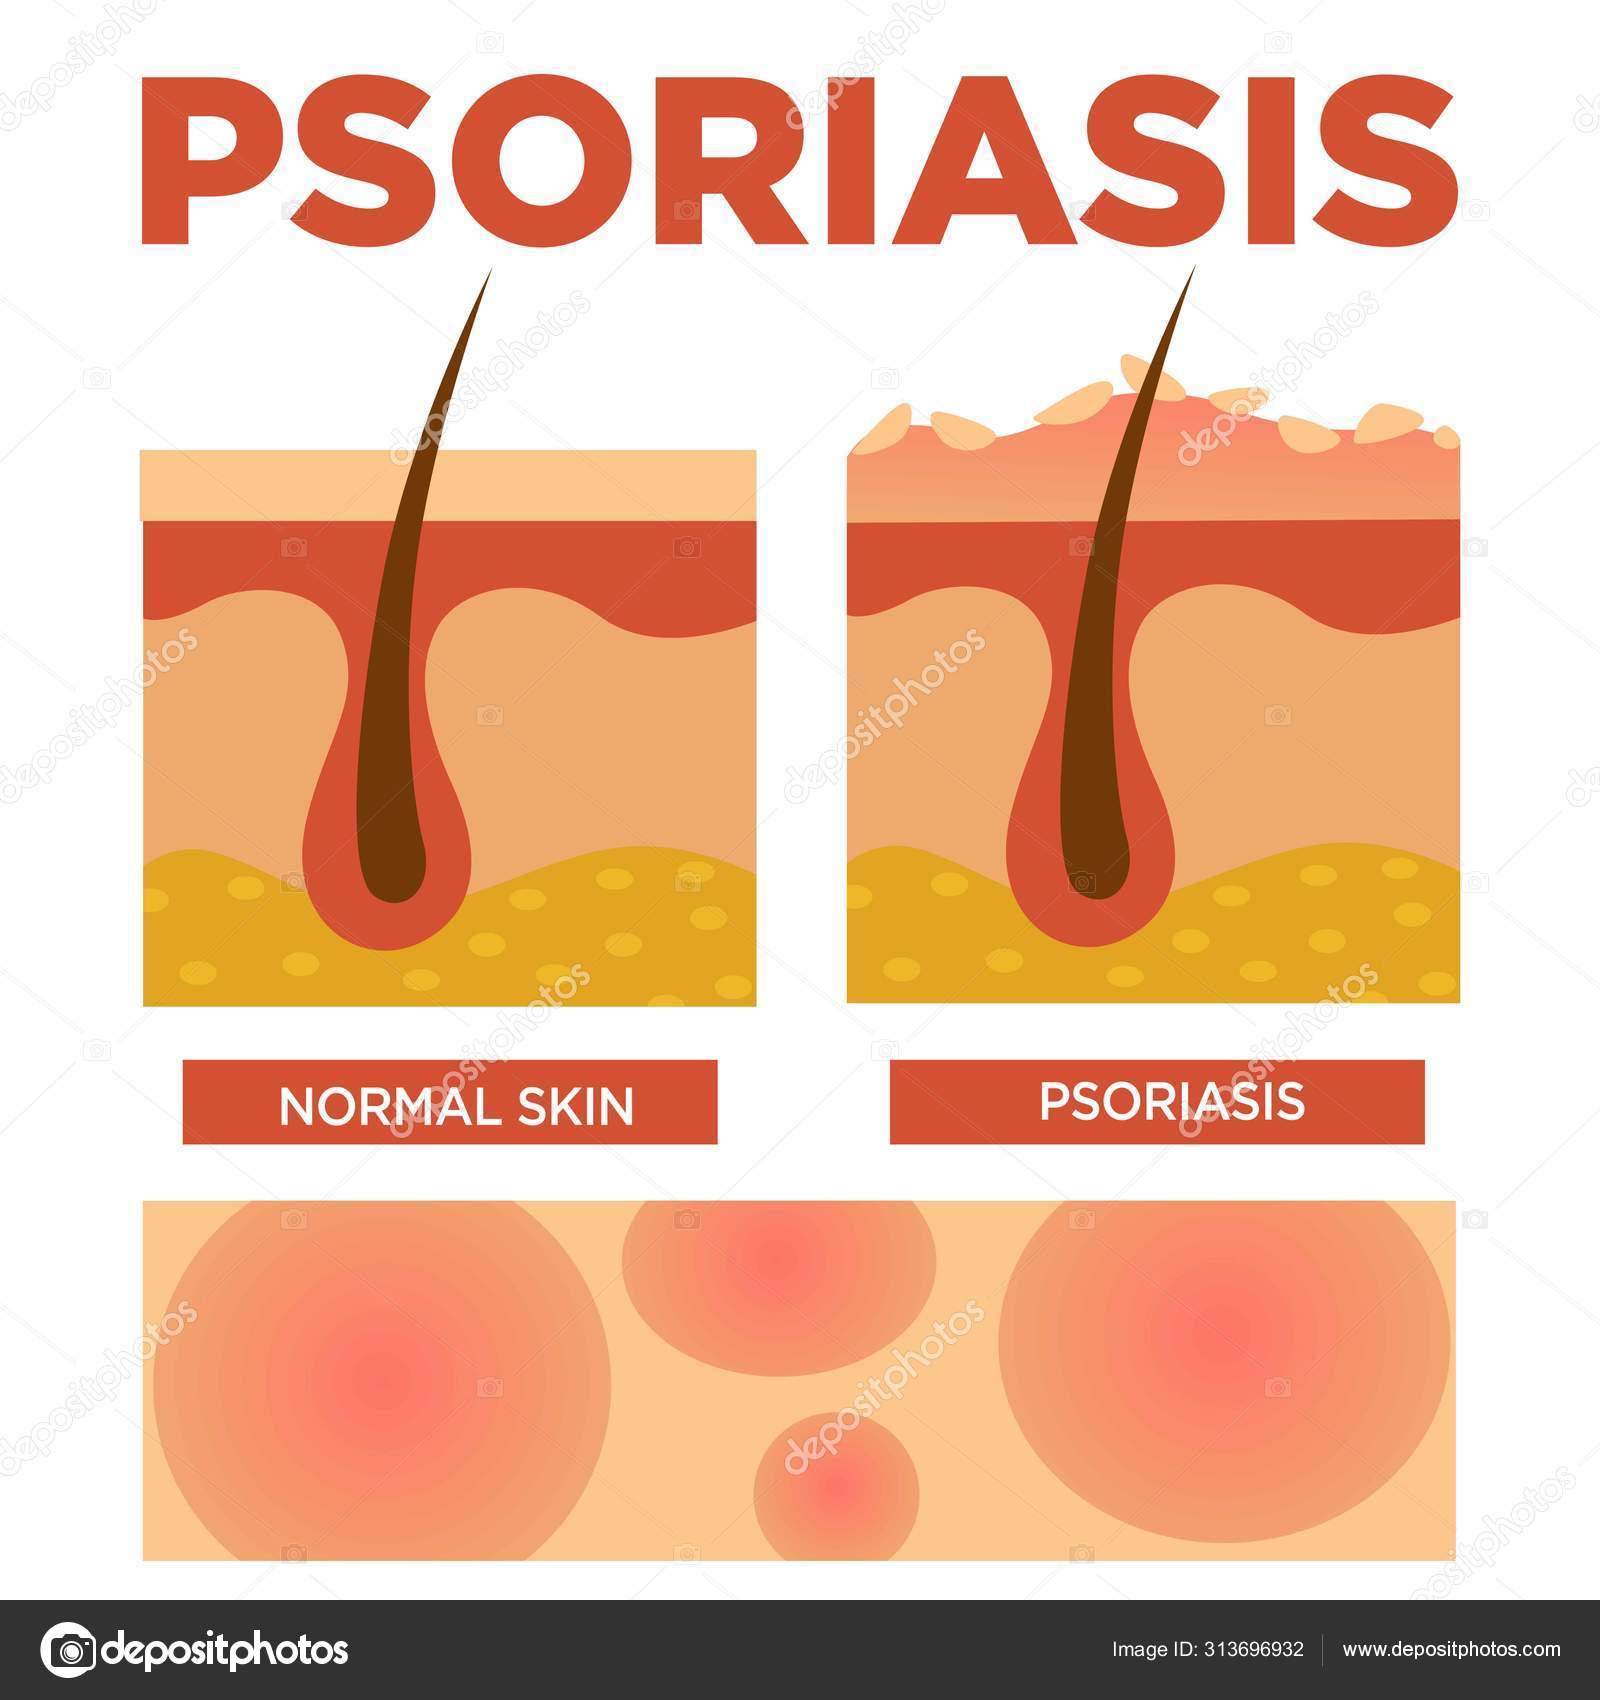 teljes psoriasis kezelsi rend lehet- e pikkelysömör aloe- val kezelni